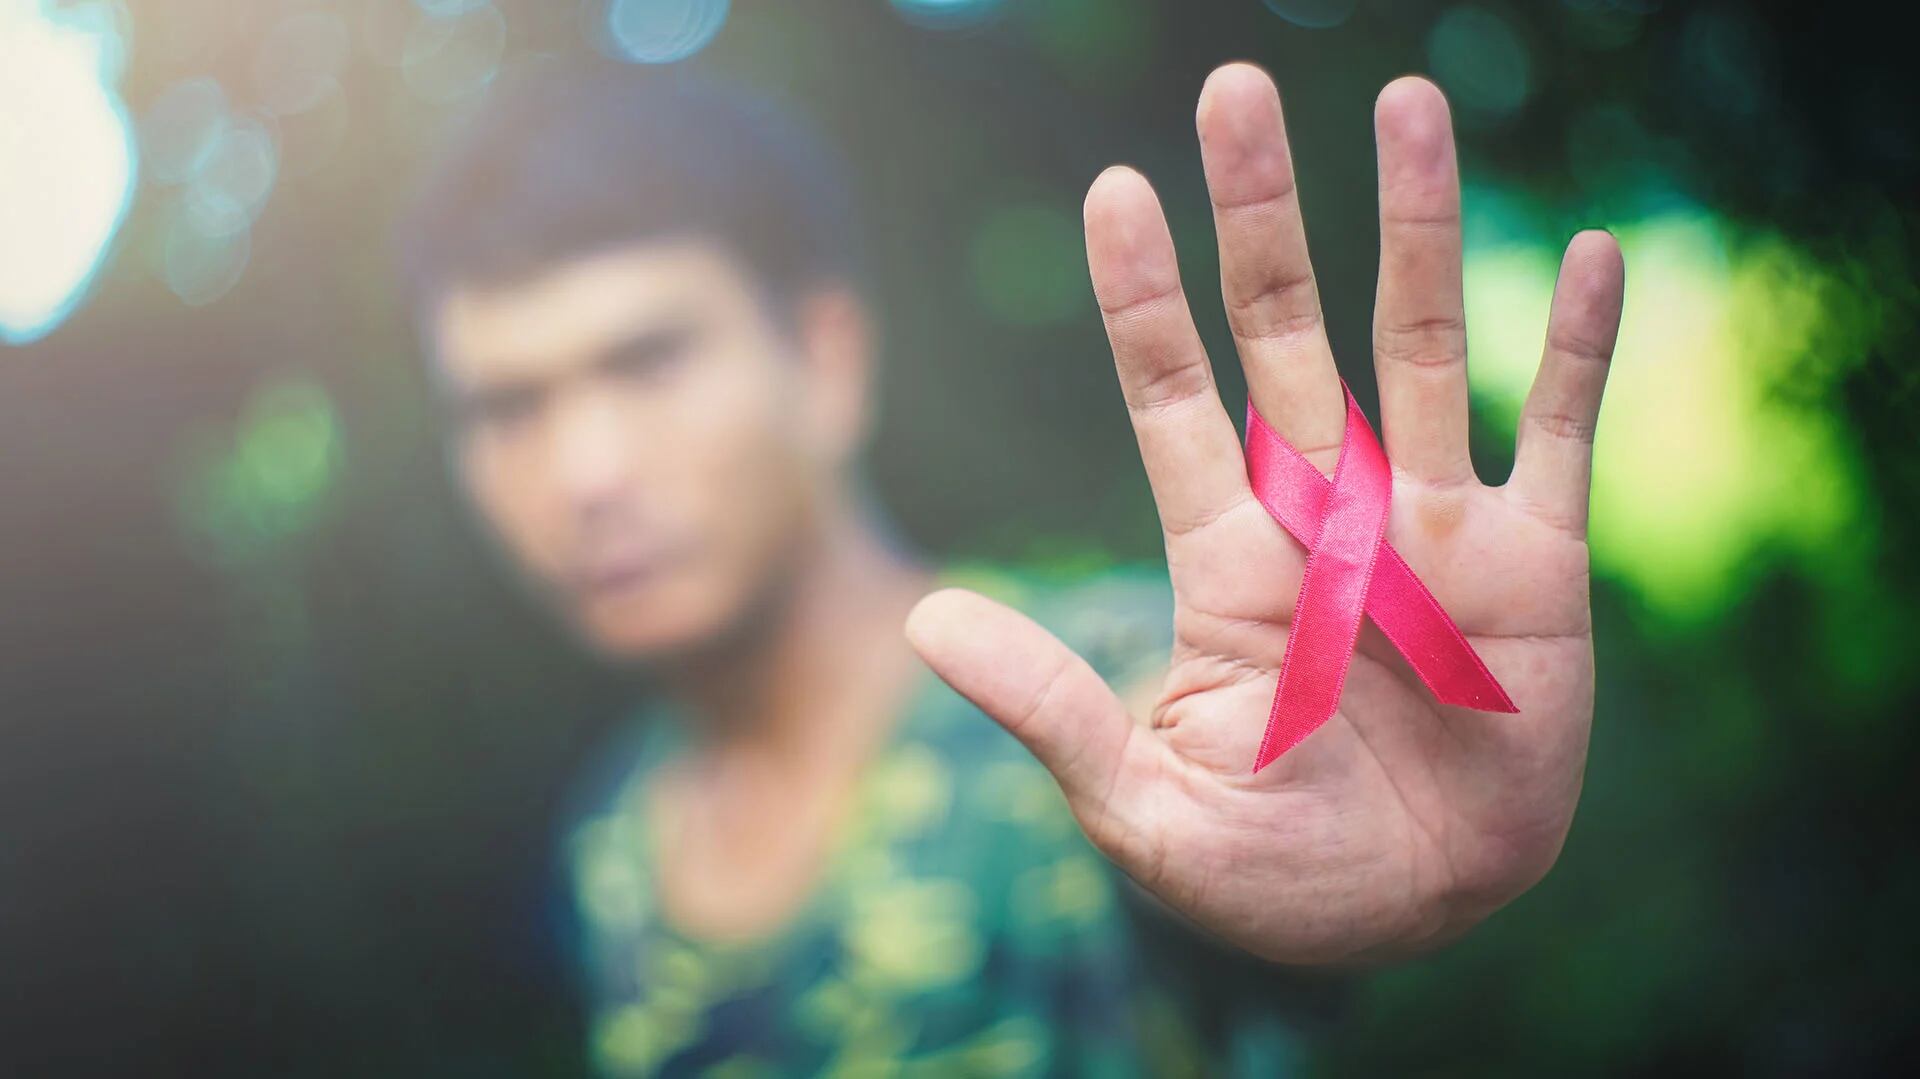 Dos millones de jóvenes de entre 10 y 19 años viven con VIH. (Shutterstock)